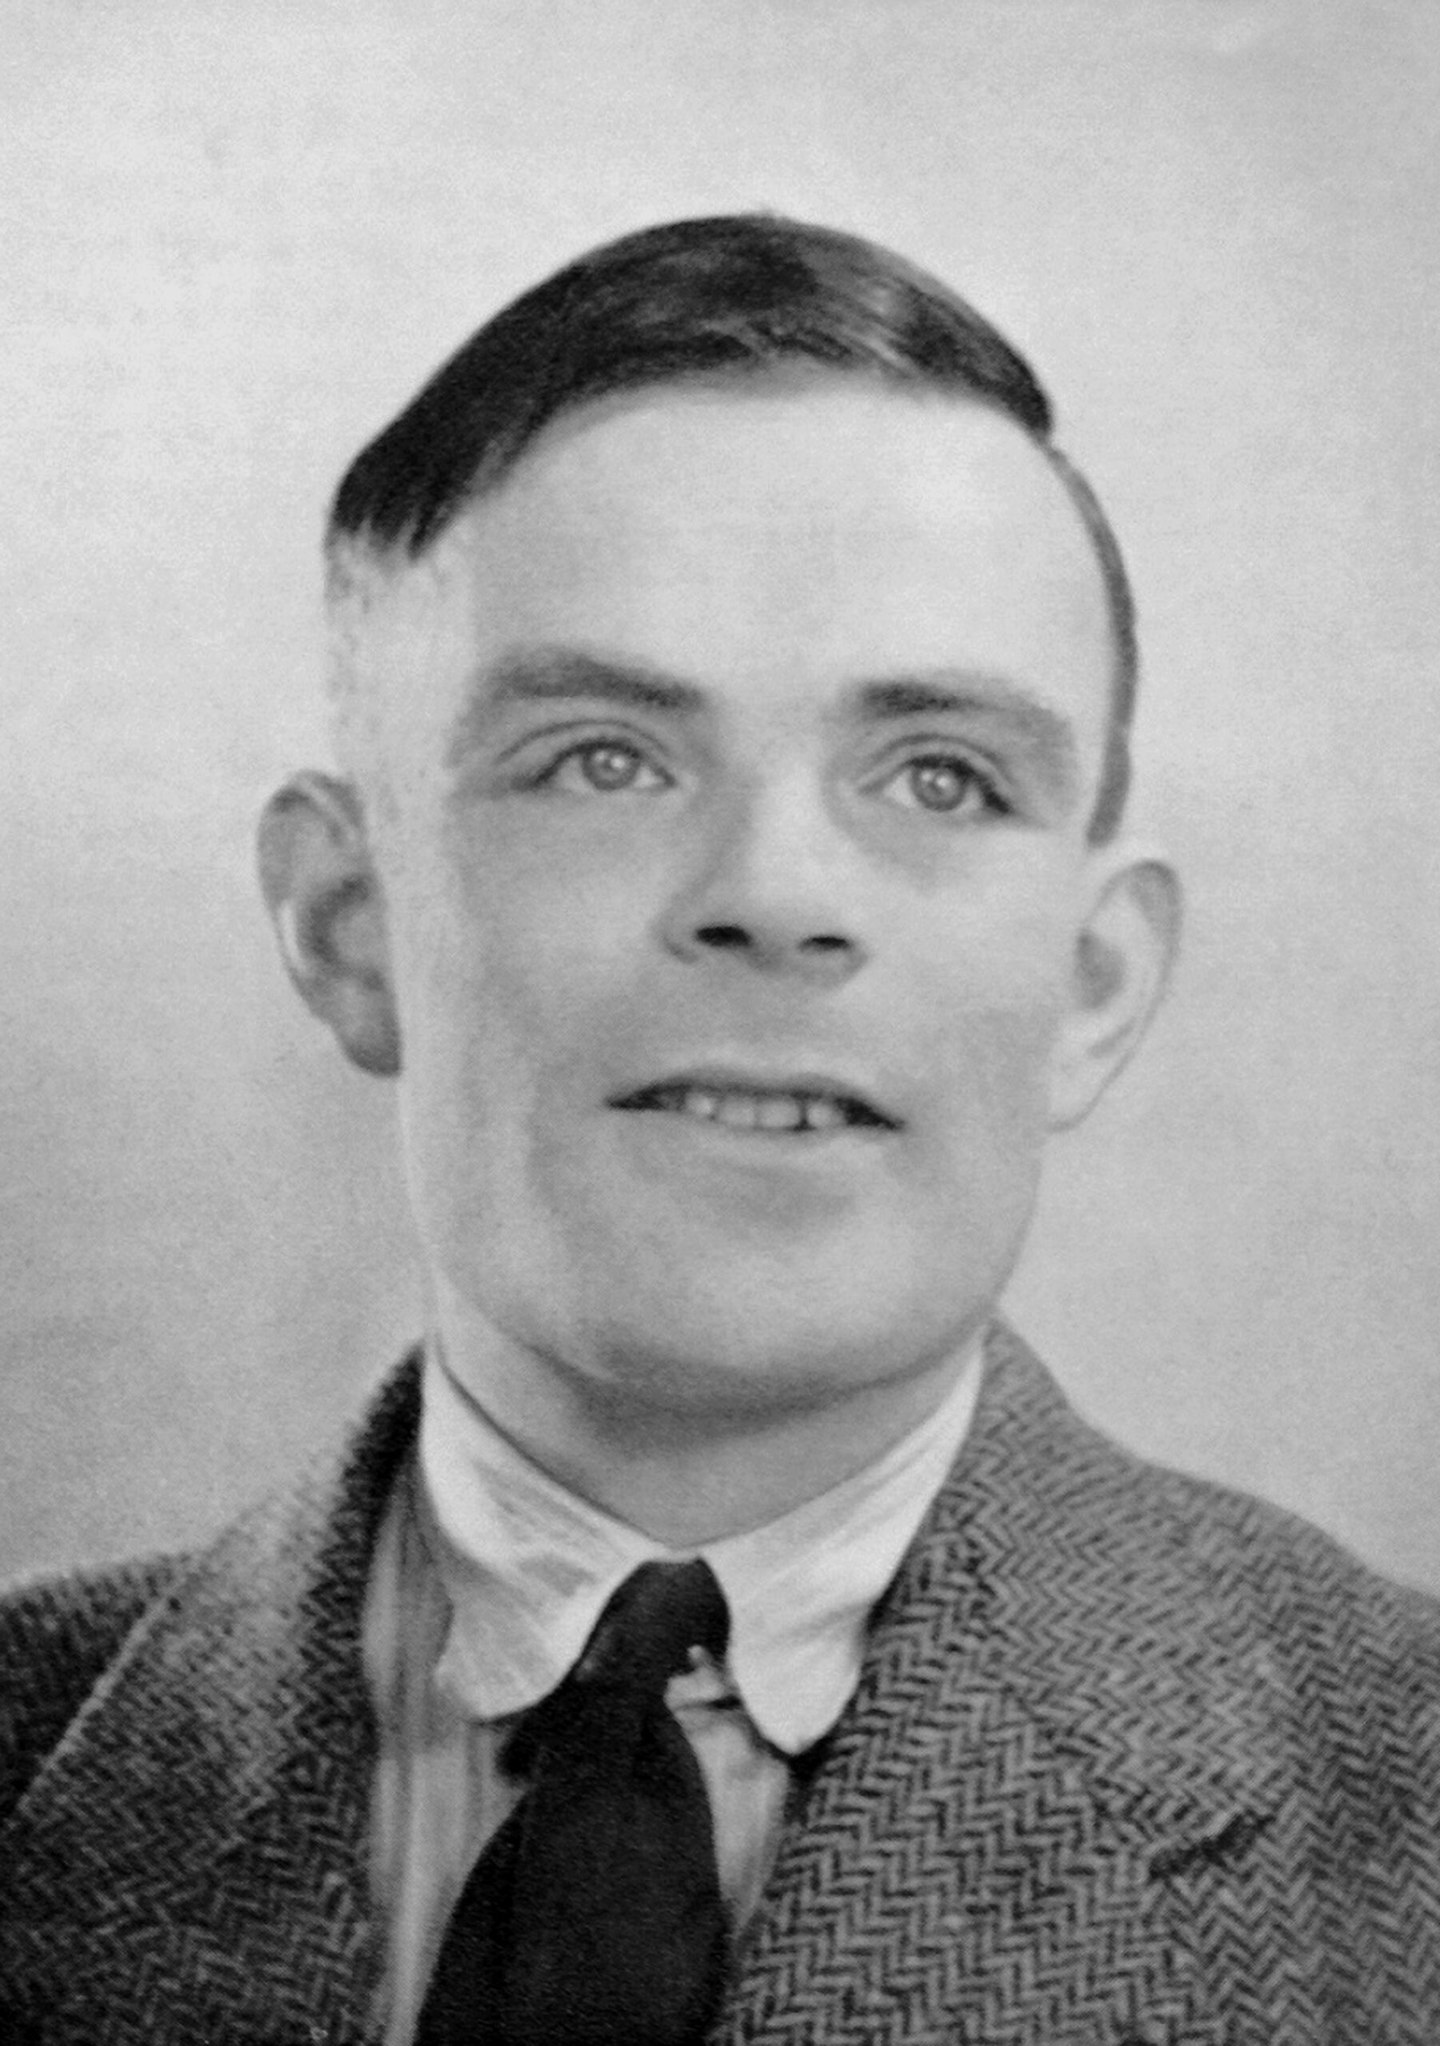 Alan Turing aged 35